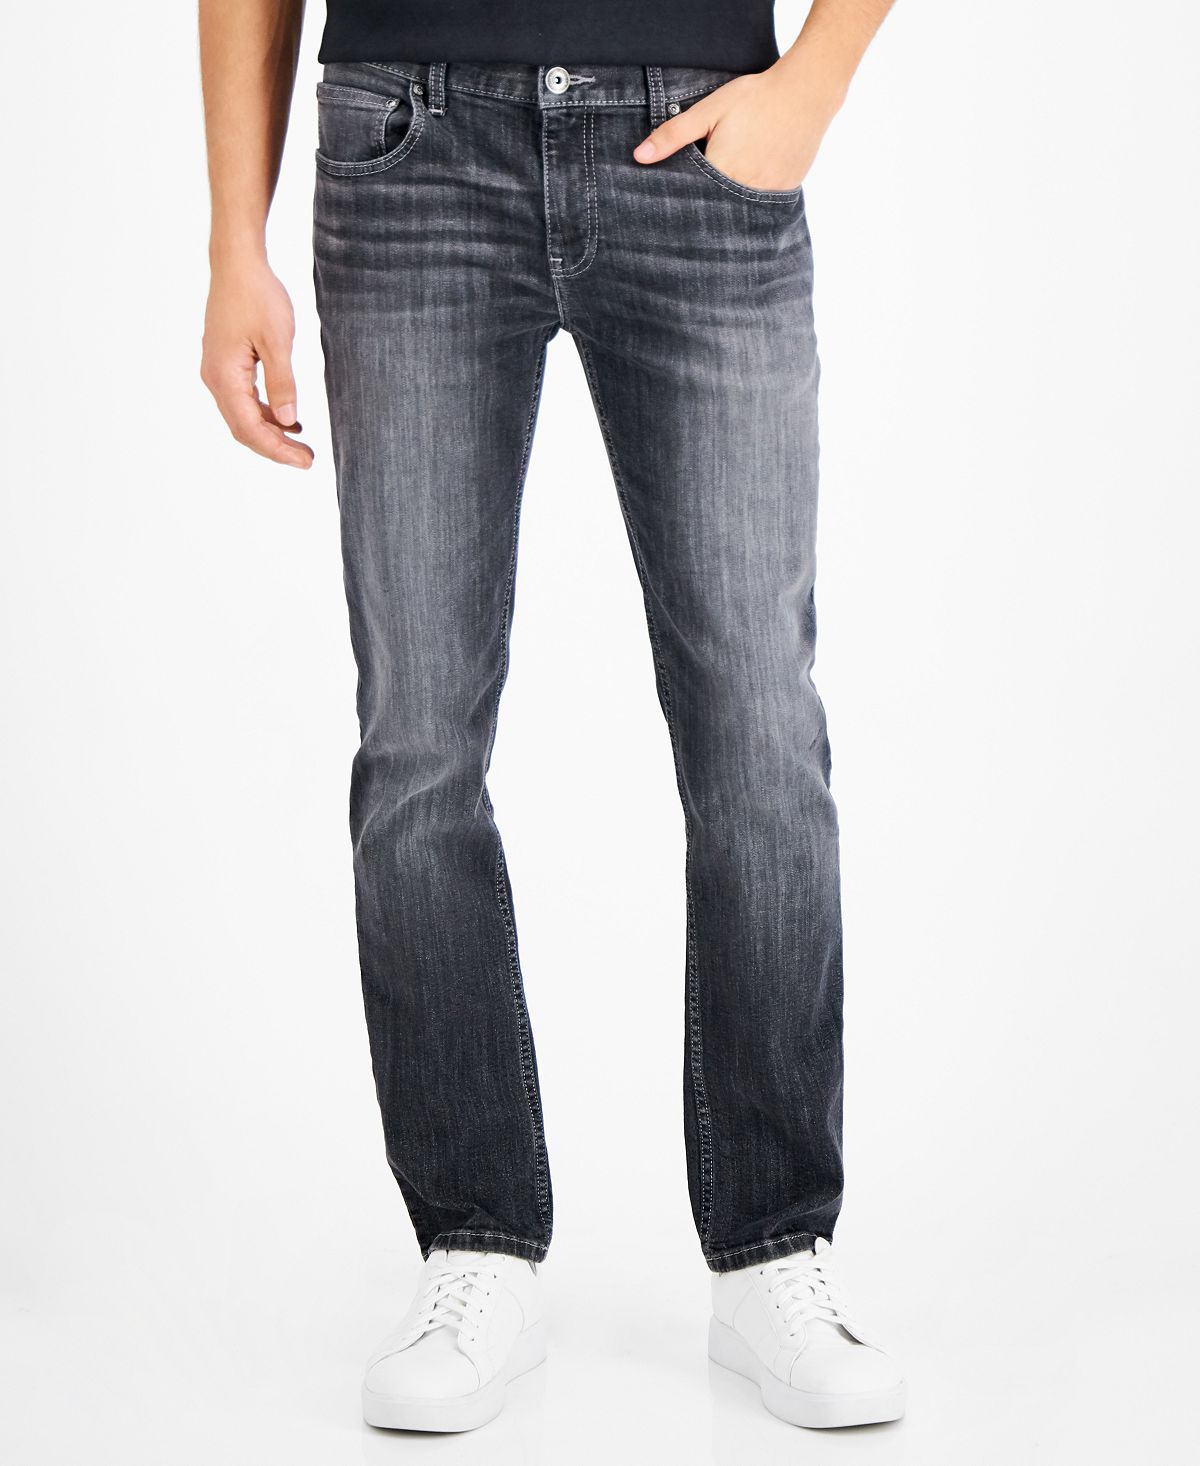 Мужские зауженные прямые джинсы tam, созданные для macy's INC International Concepts, мульти джинсы colin s с потертостями 44 размер